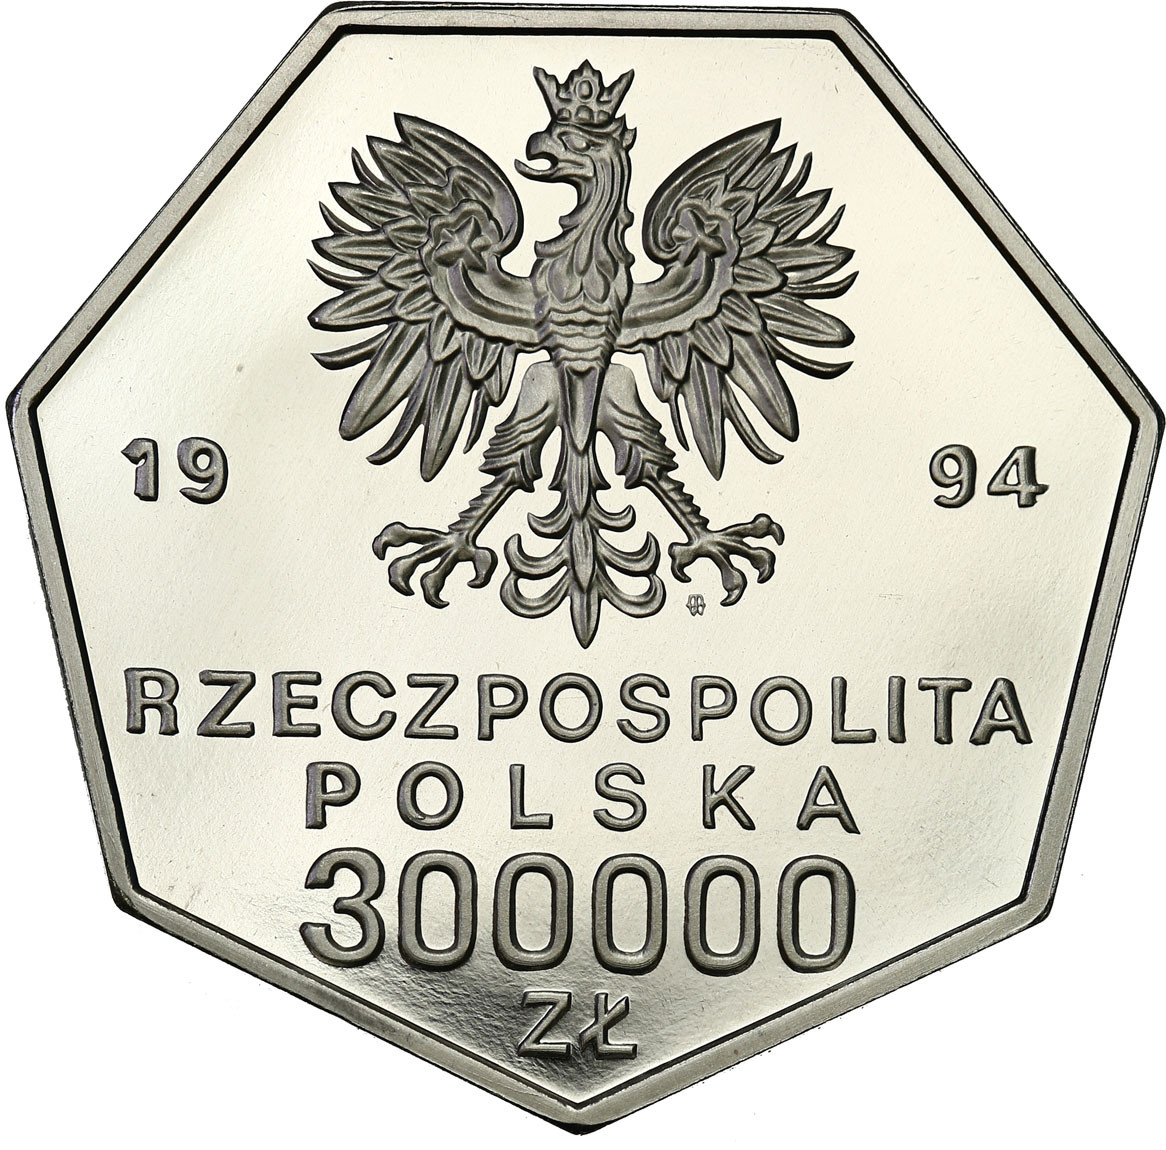 PRL. PRÓBA Nikiel 300 000 złotych 1994 - Odrodzenie Banku